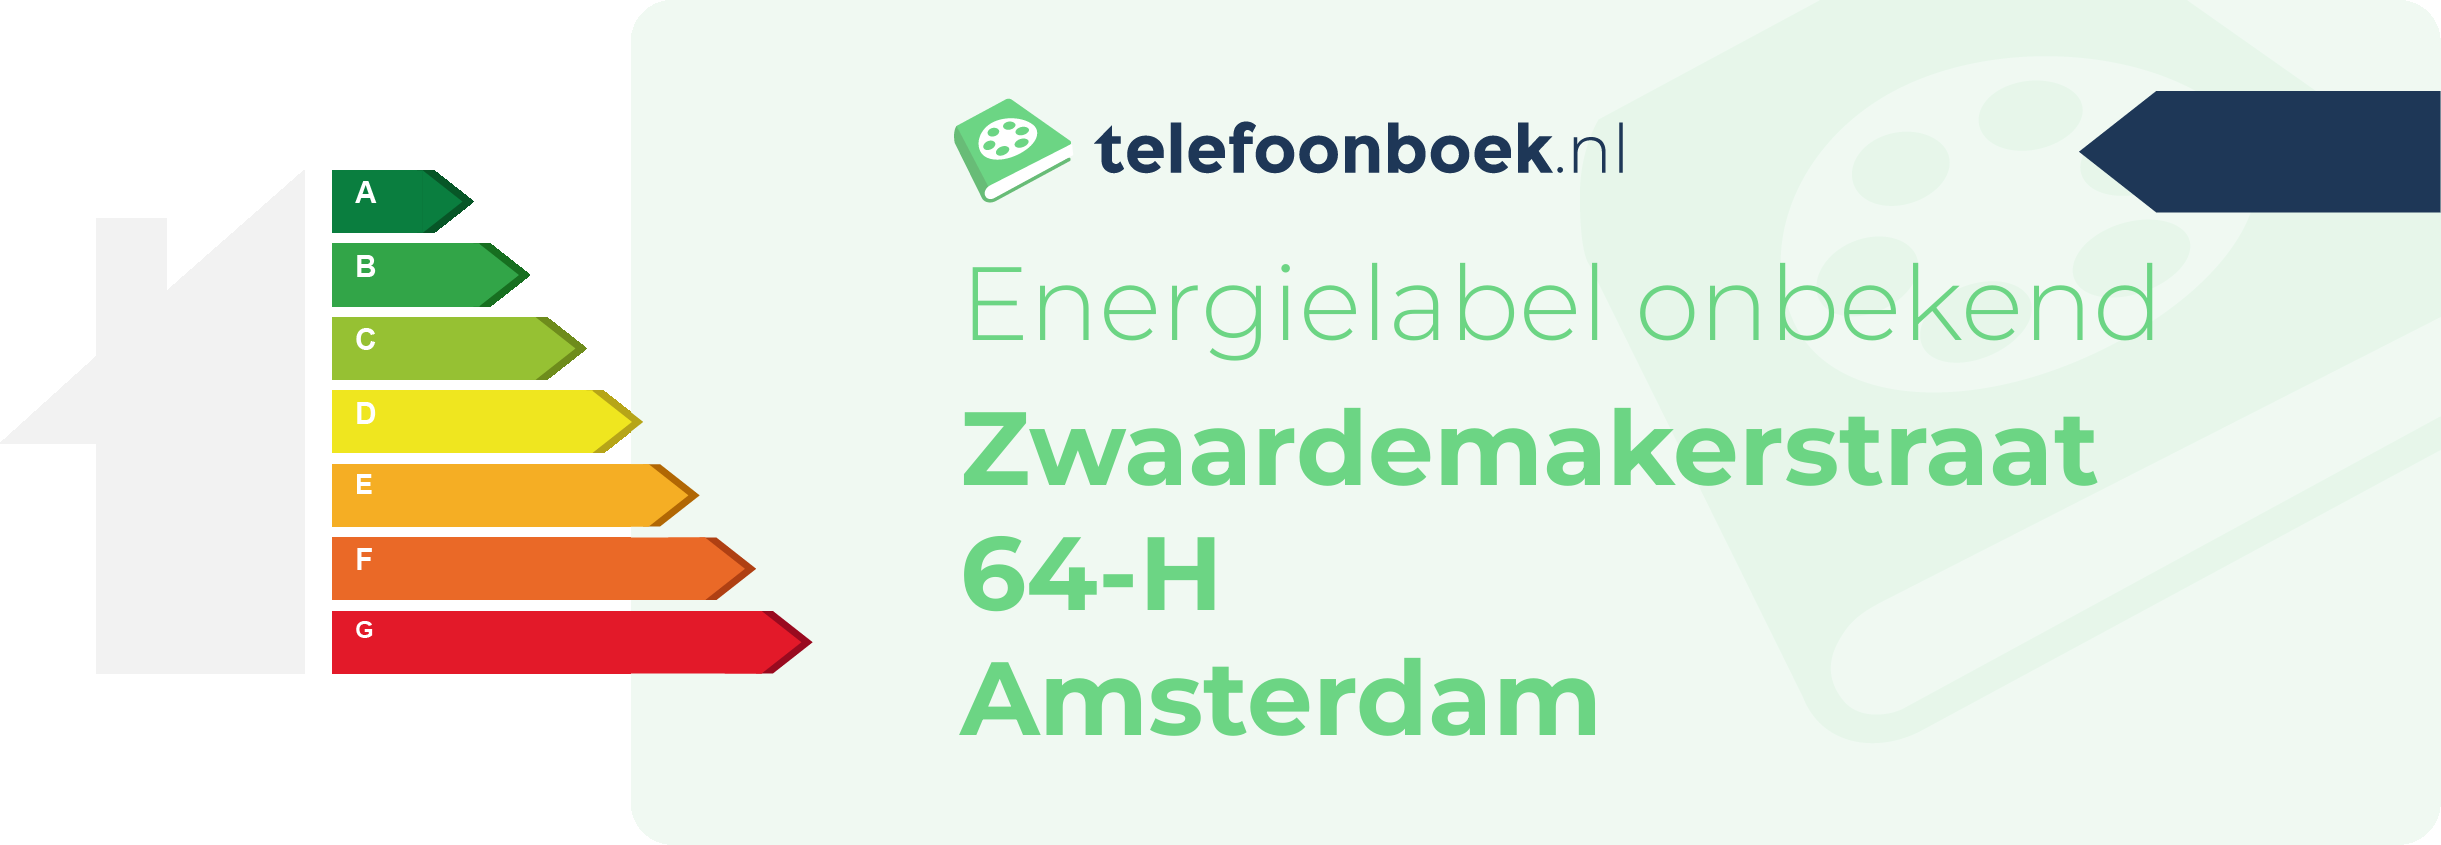 Energielabel Zwaardemakerstraat 64-H Amsterdam